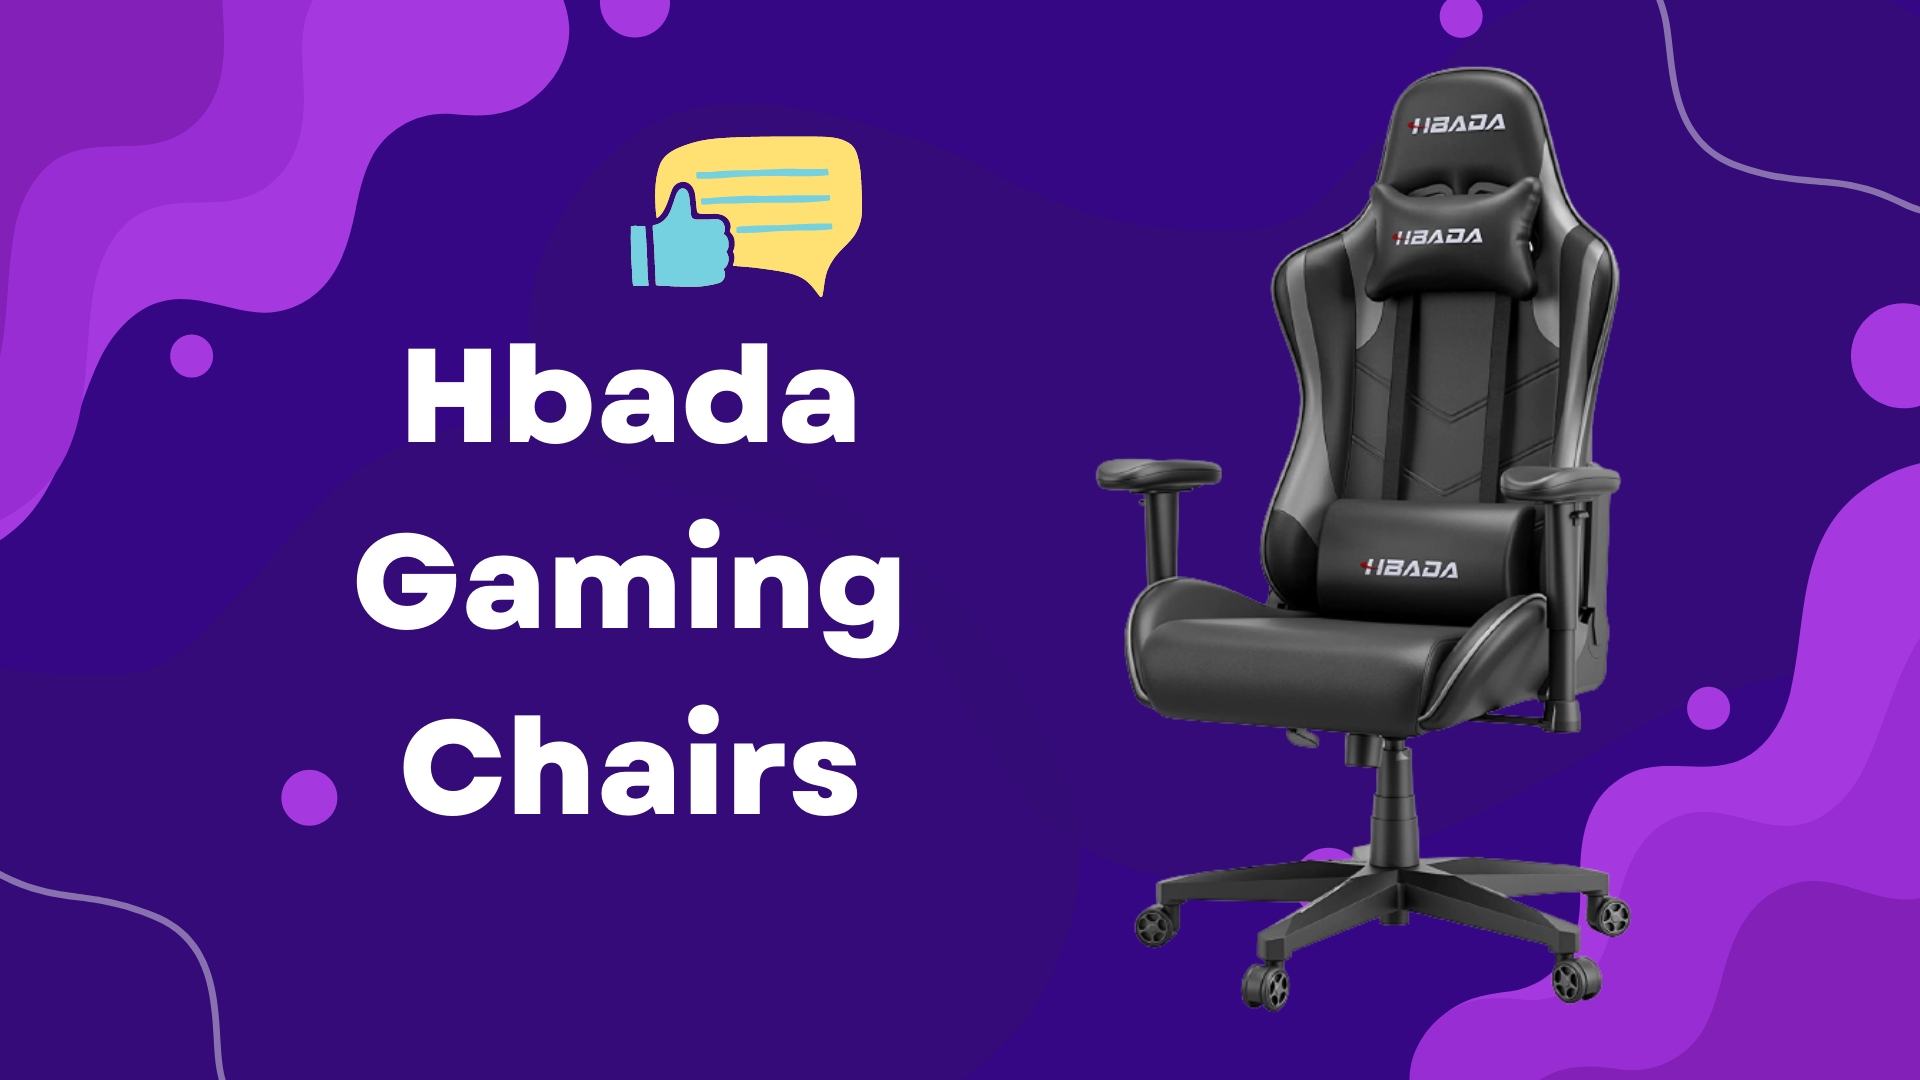 Hbada Gaming Chairs Review: Best Ergonomic Design?